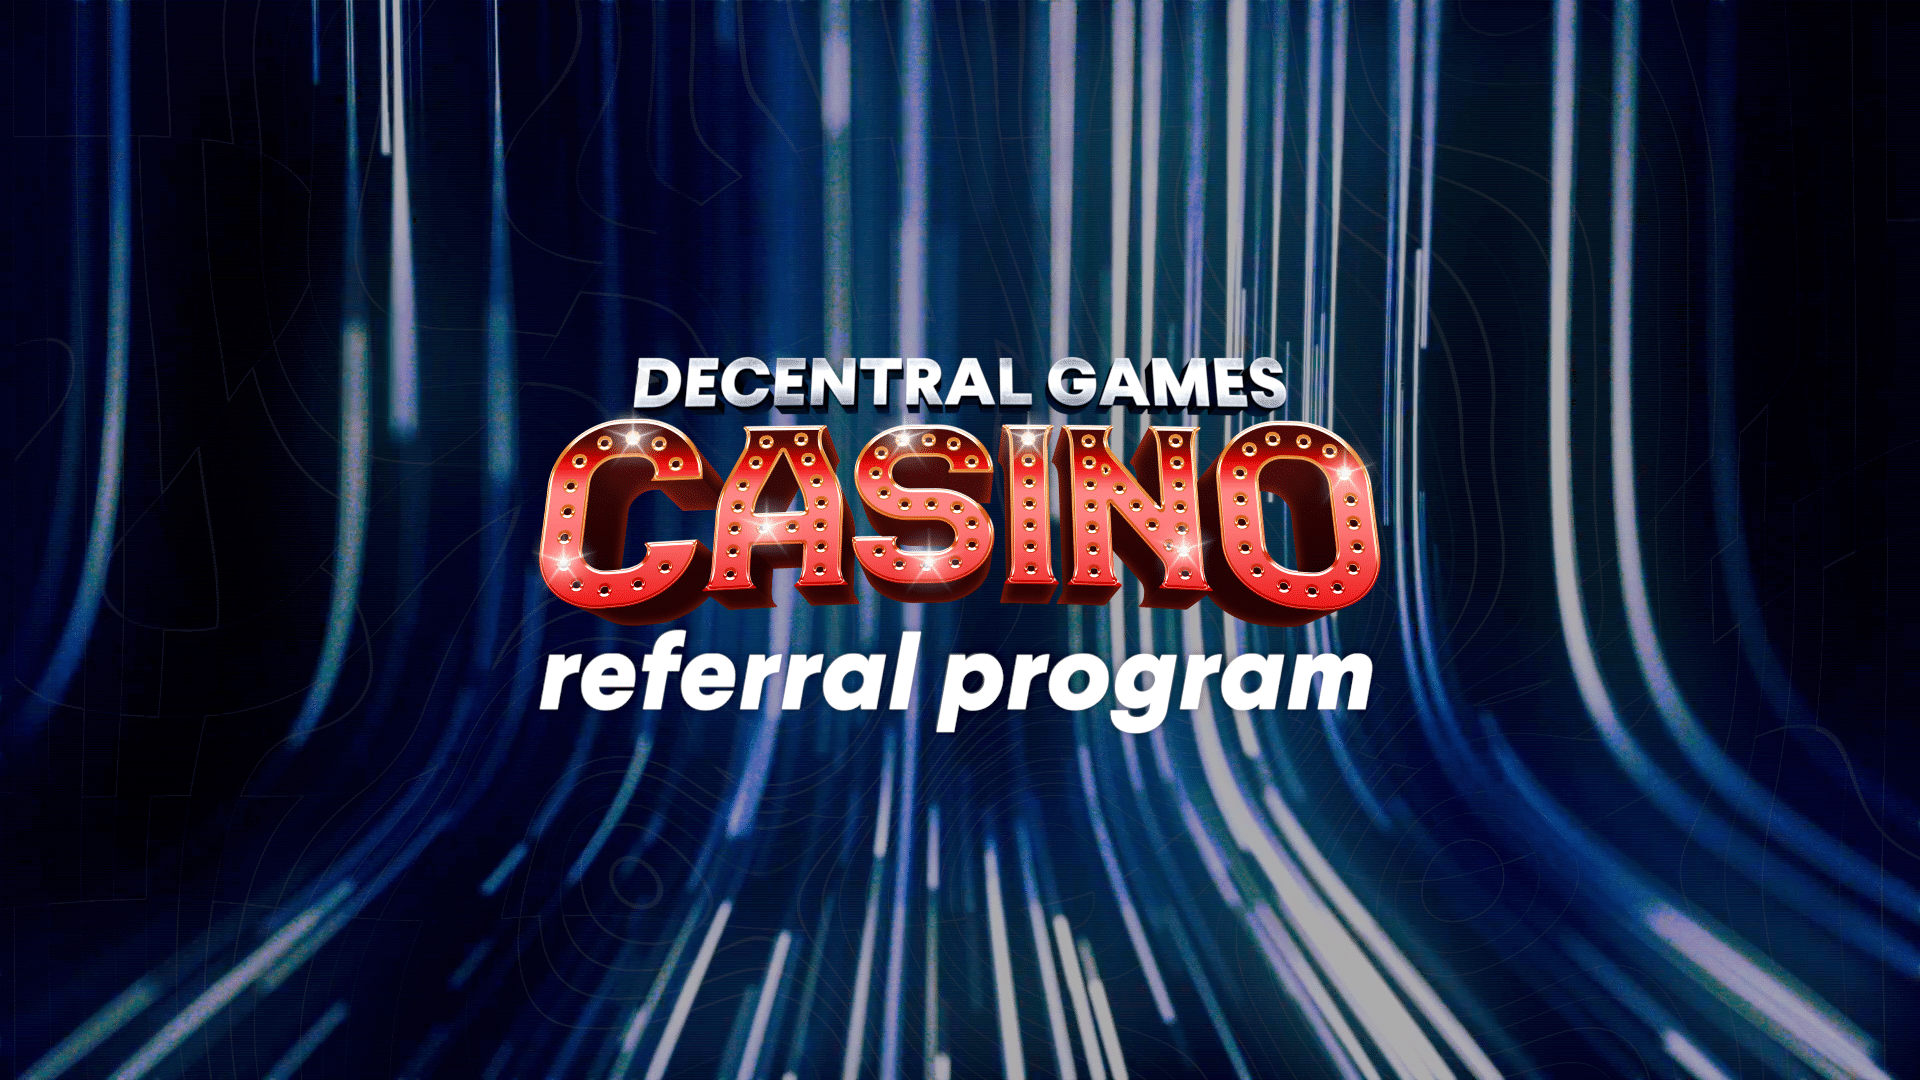 Refer Friends, Earn Rewards: Decentral Games Referral Program